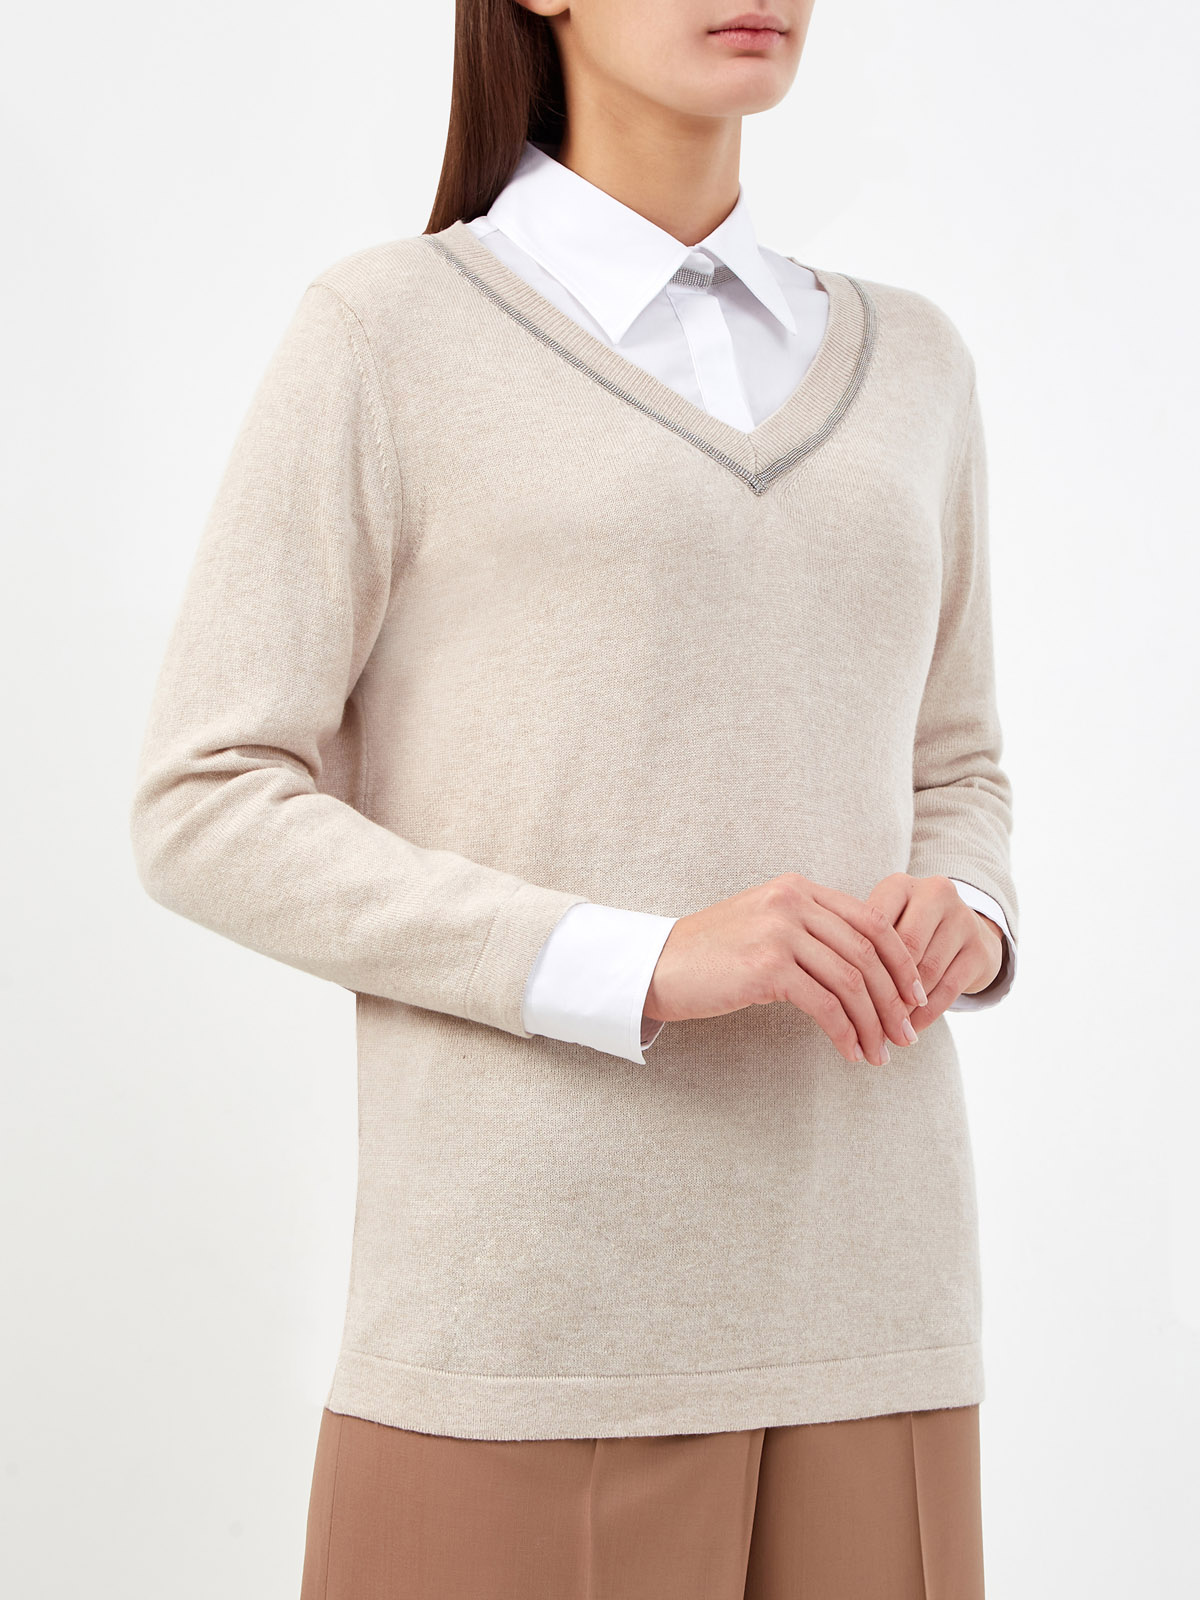 Пуловер из пряжи Platinum с окантовкой рядами цепочек FABIANA FILIPPI, цвет бежевый, размер 40;42;44;46;48 - фото 3